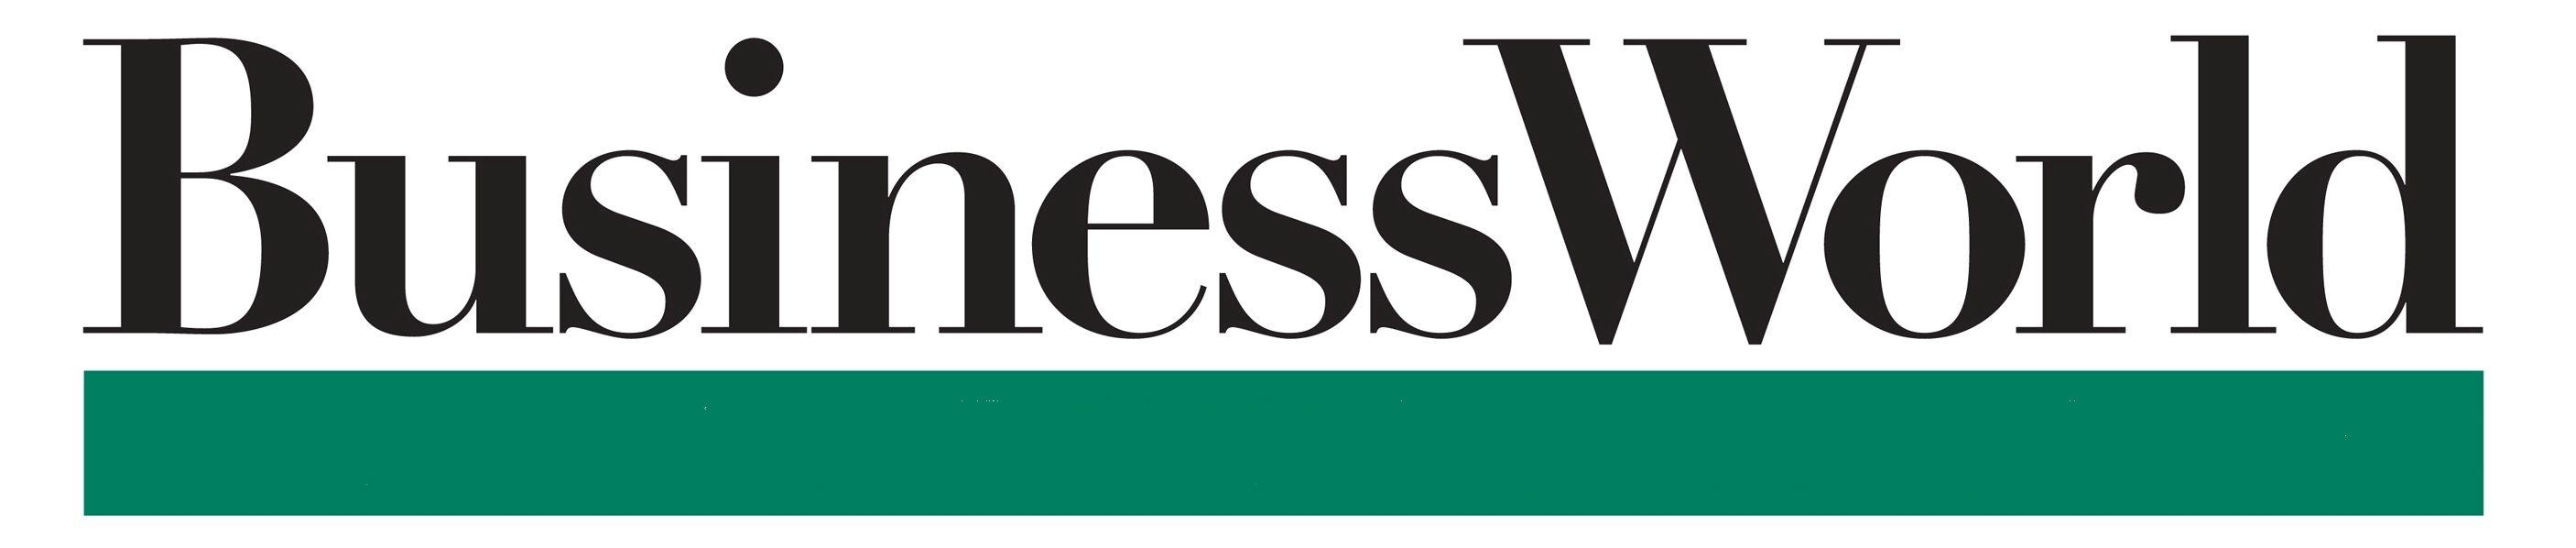 World Business Logo - File:BusinessWorld logo.jpg